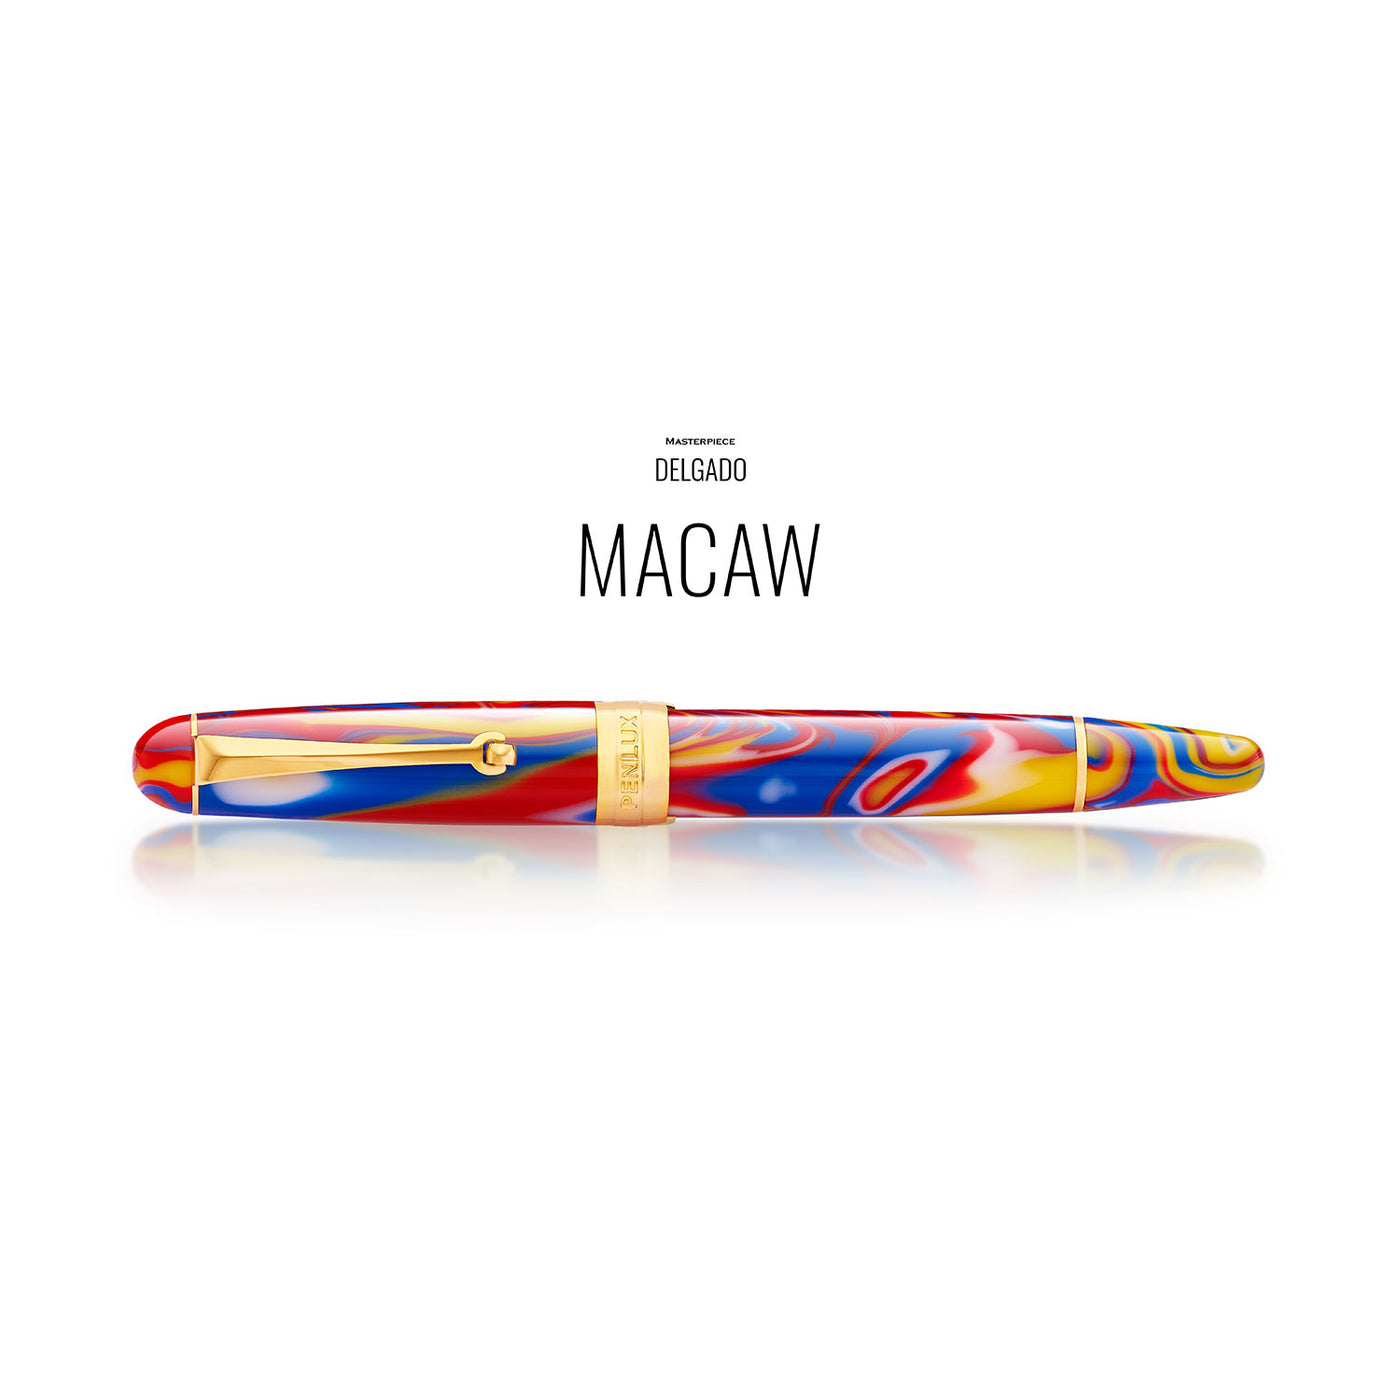 Penlux Masterpiece Delgado Fountain Pen - Macaw 5